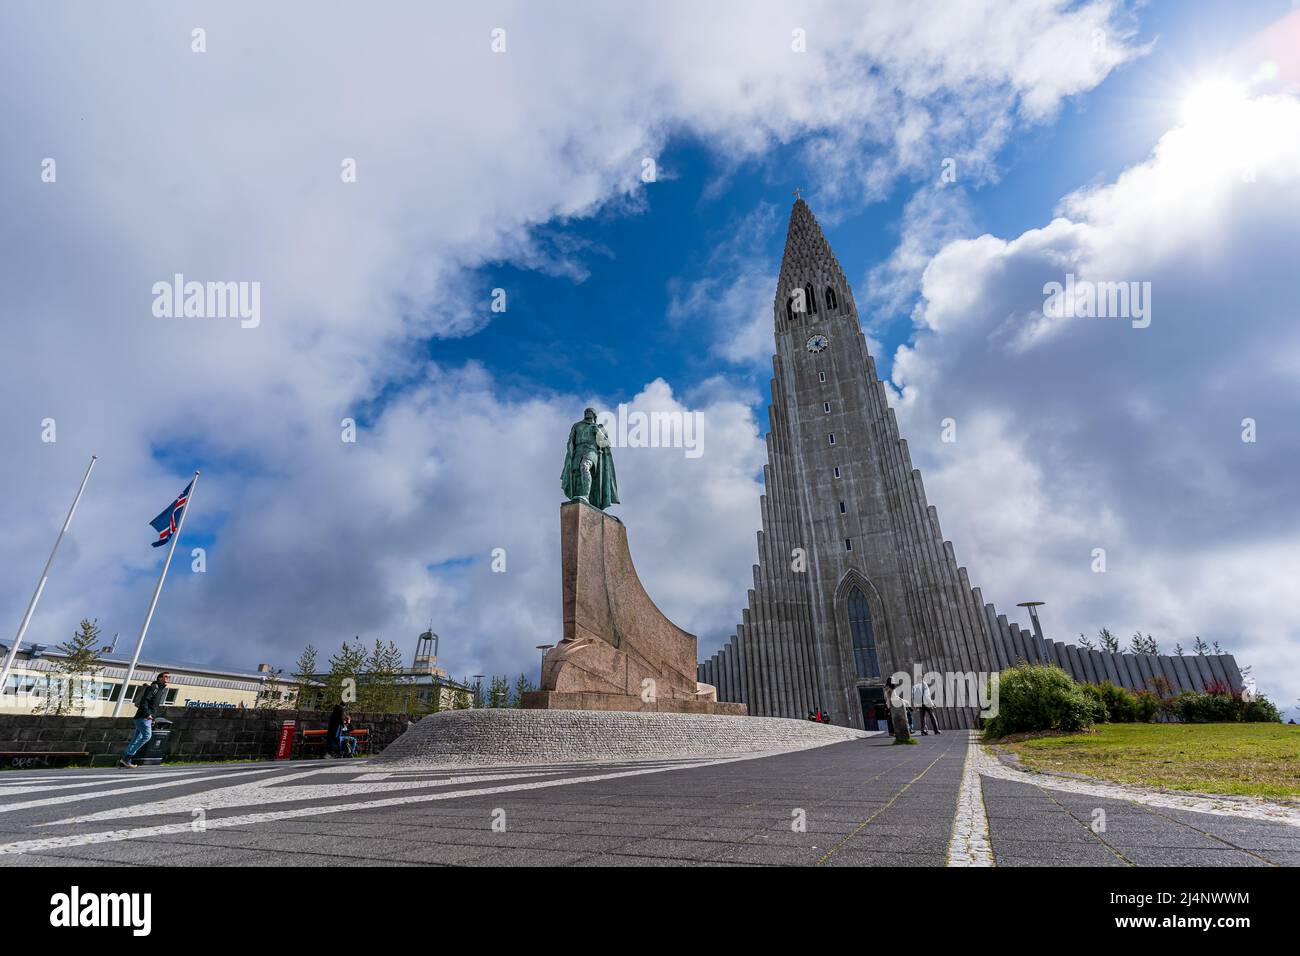 Belle image aérienne de Reykjavik, capitale des Islandais, de la cathédrale de Hallgrimskirkja et de la belle ville Banque D'Images